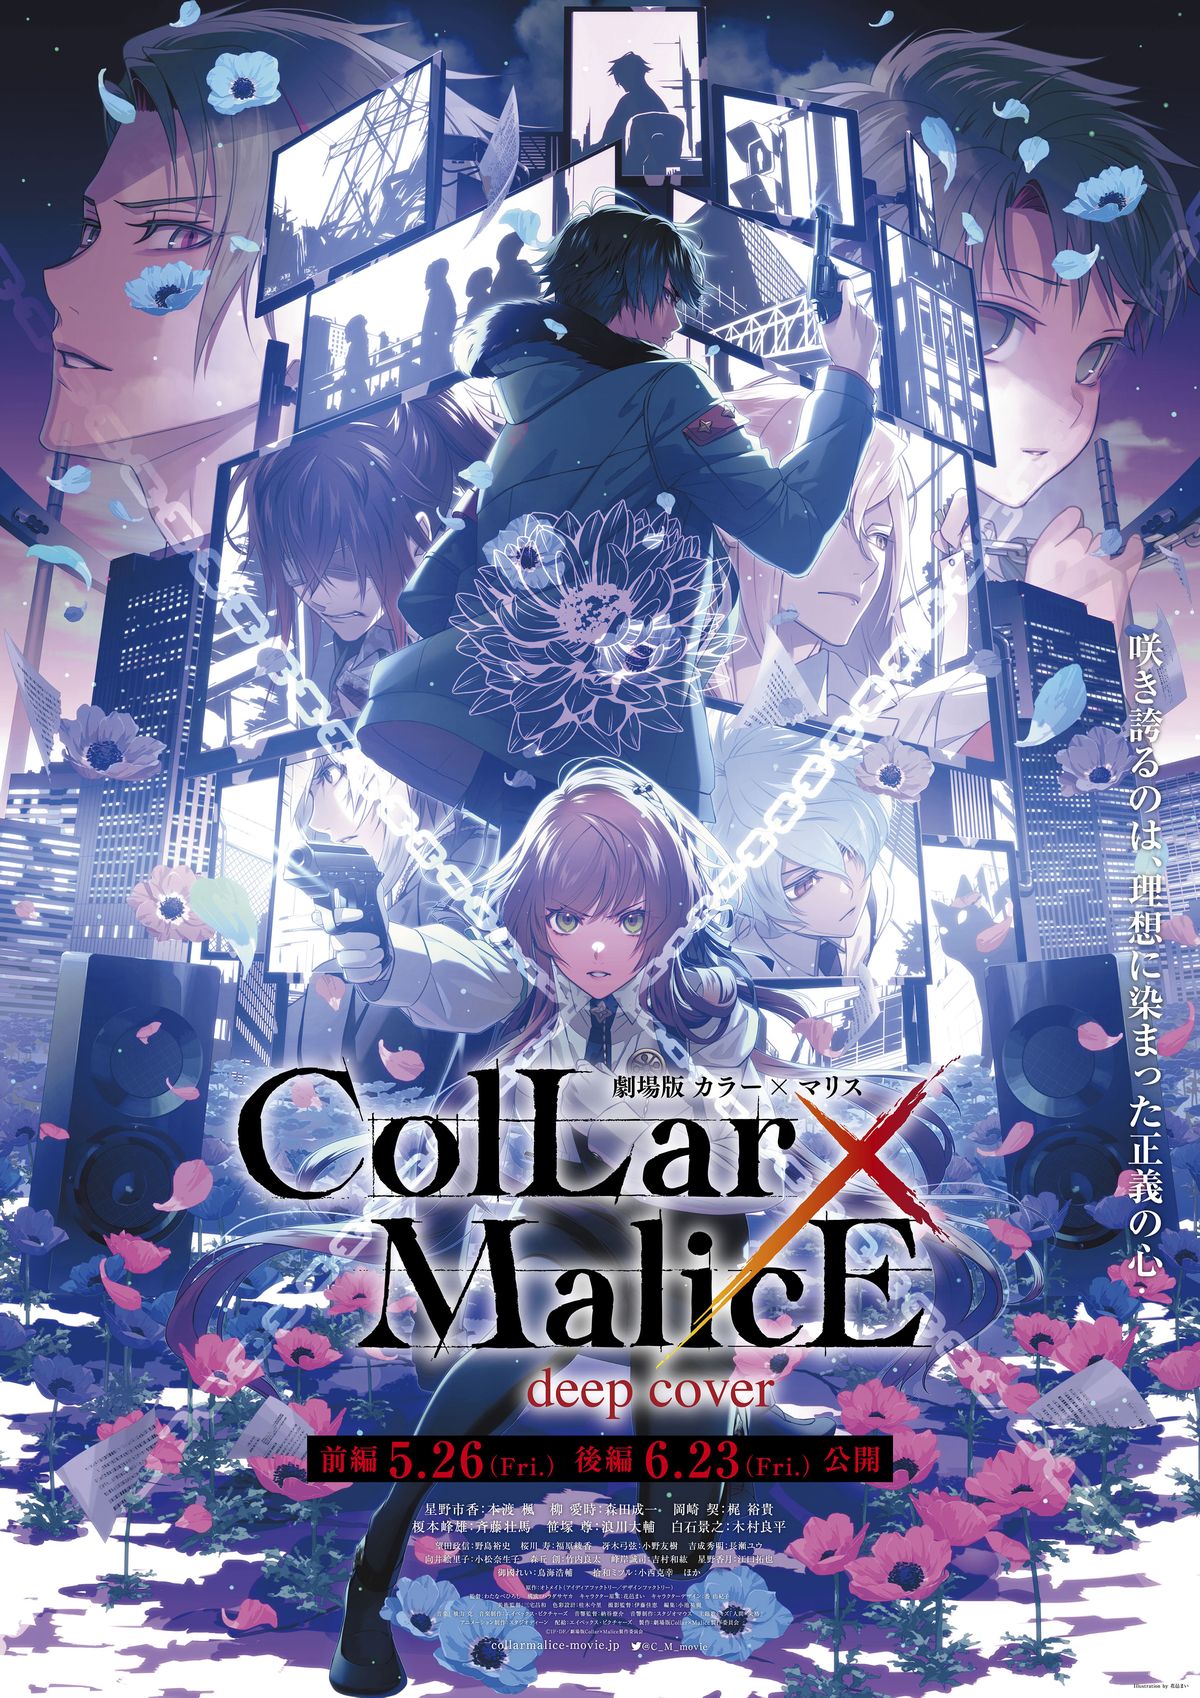 劇場版 Collar×Malice -deep cover-」の本予告が公開に。オリジナル